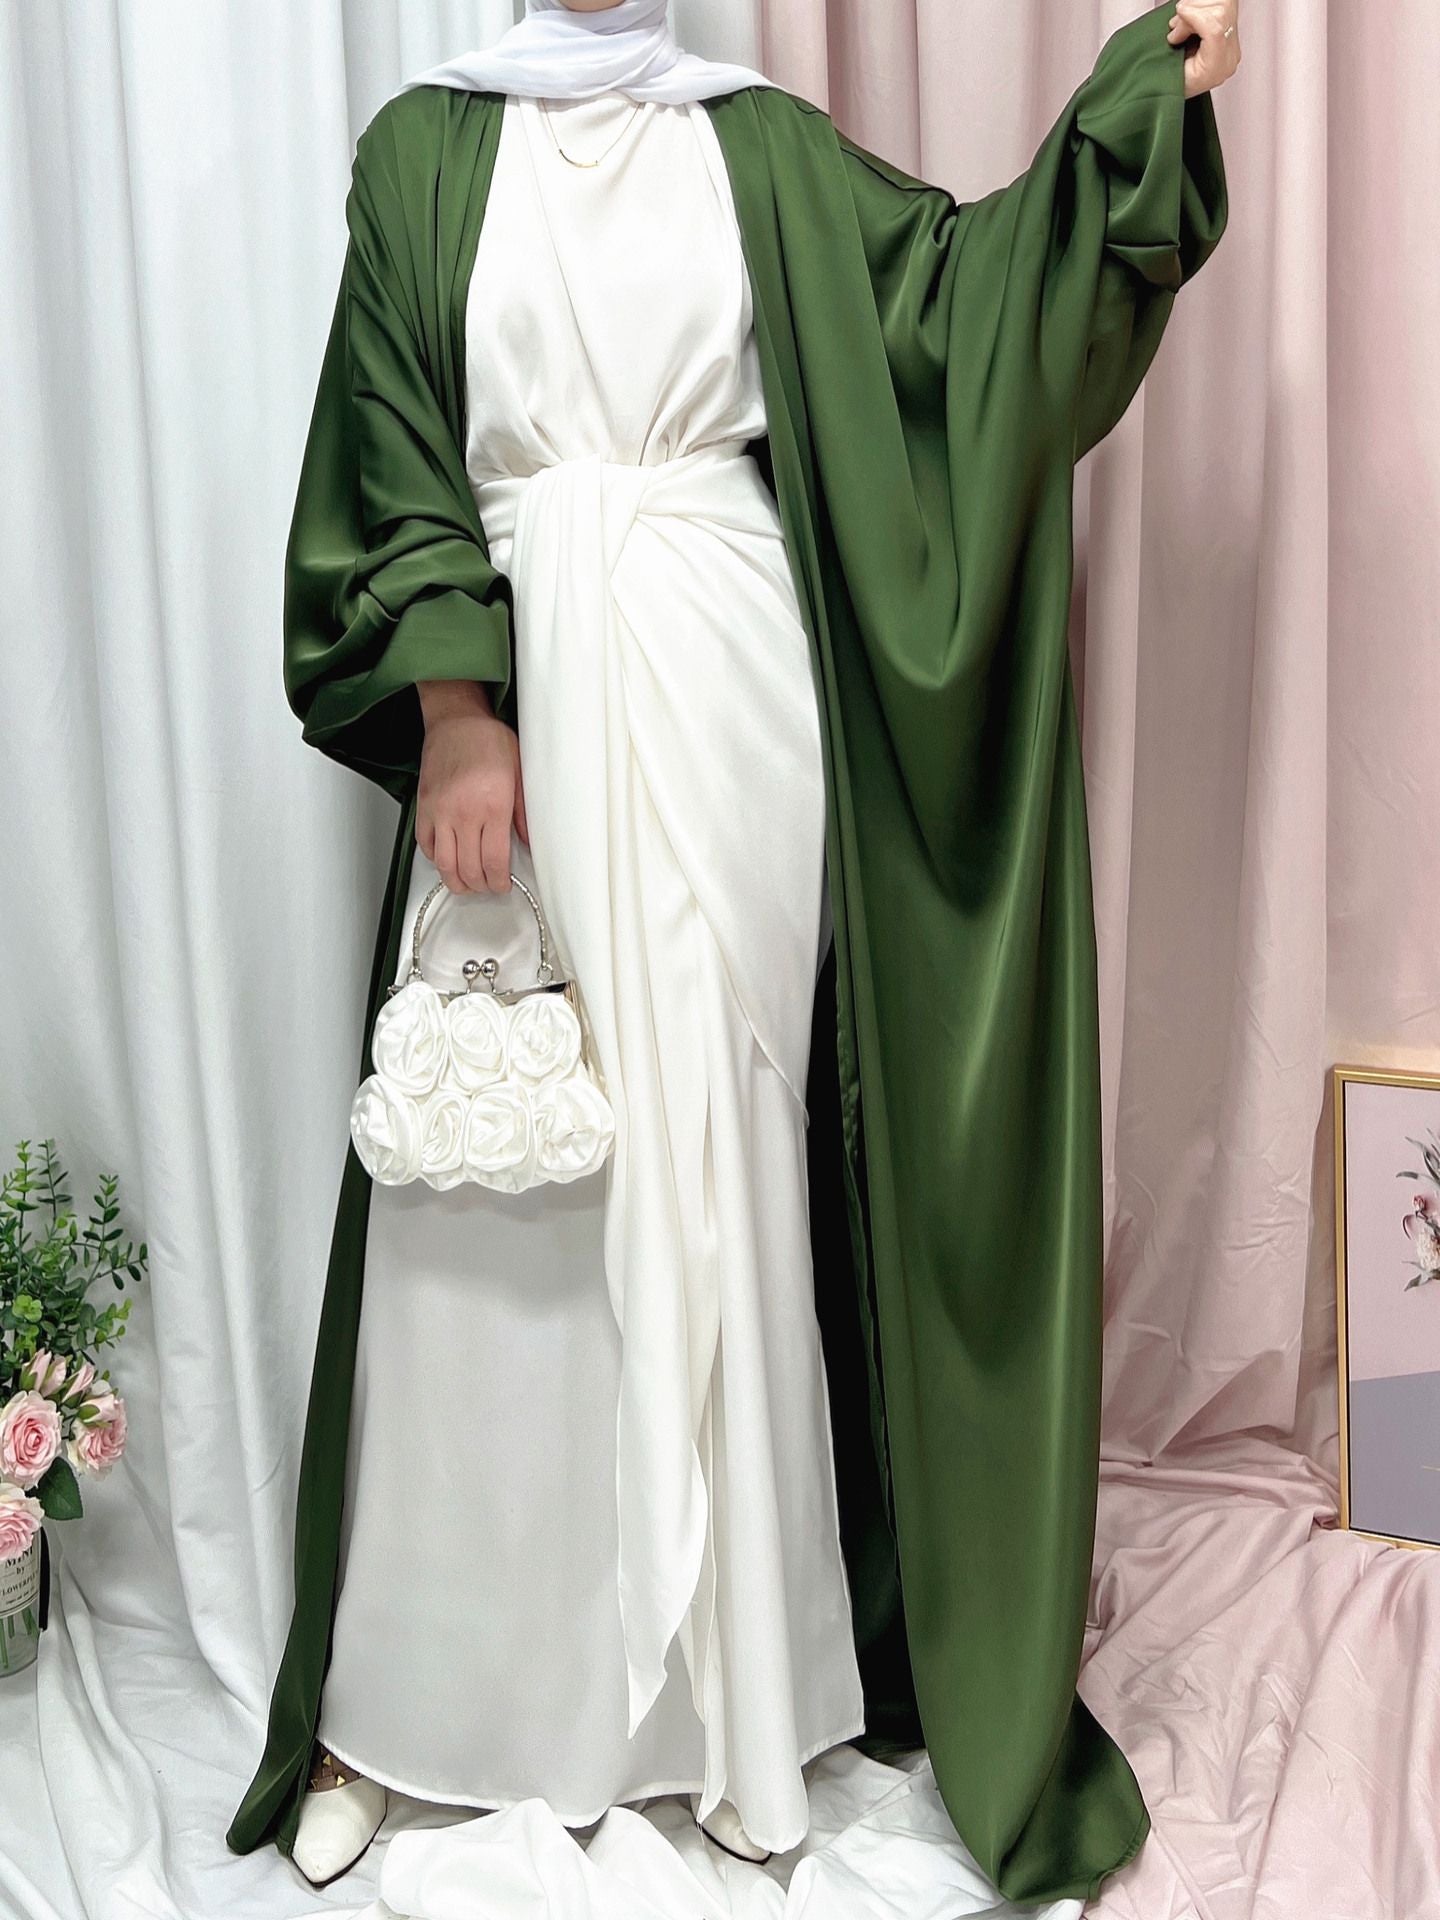 Soft Robe Abaya Elegant Silky